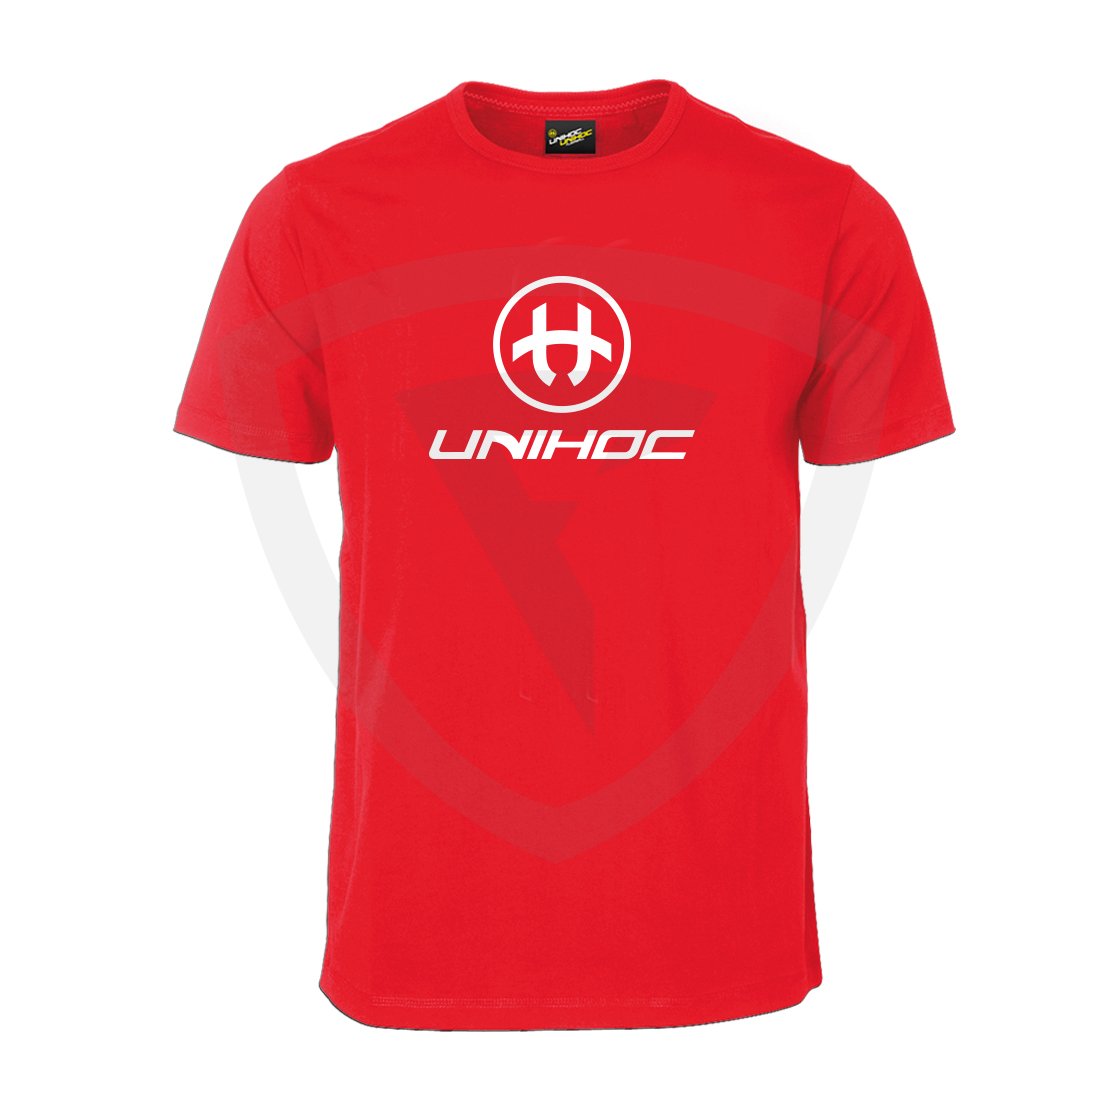 Unihoc T-shirt Storm Red JR 120 červená